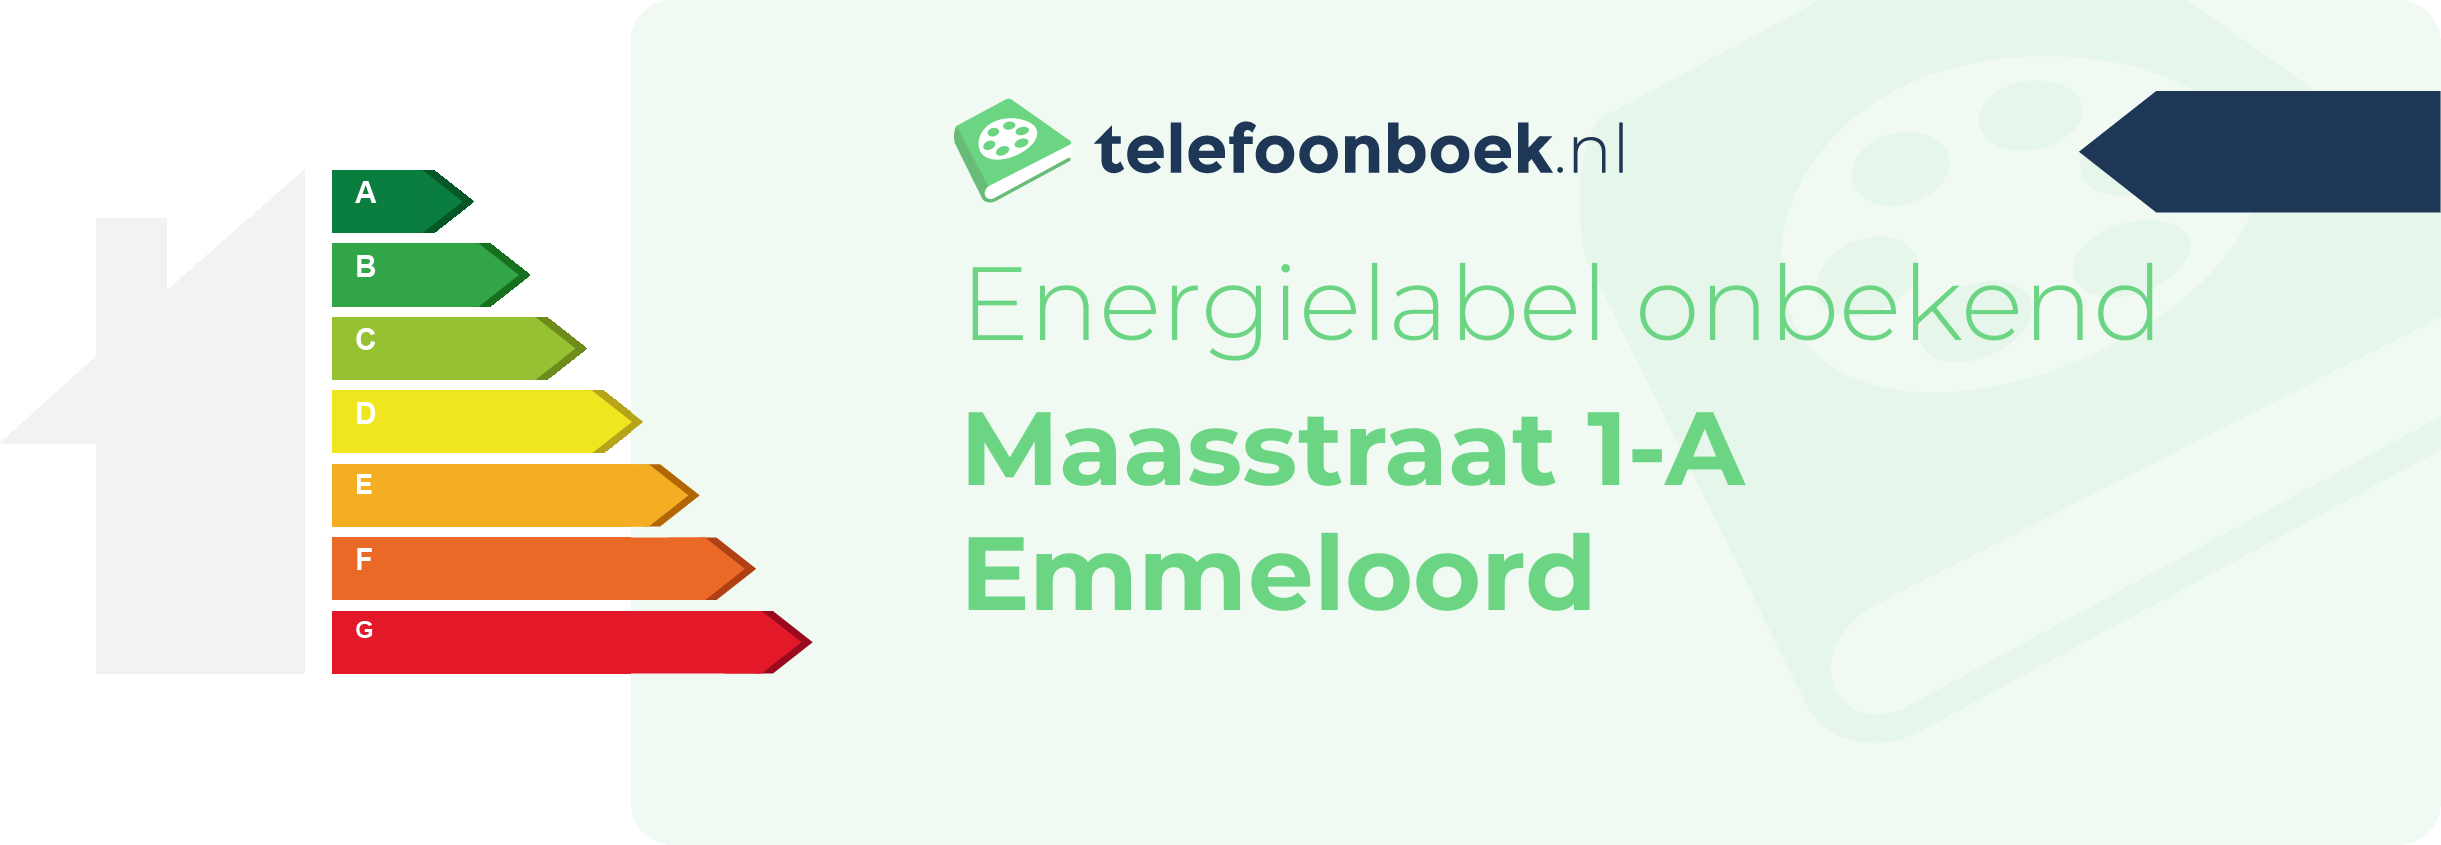 Energielabel Maasstraat 1-A Emmeloord